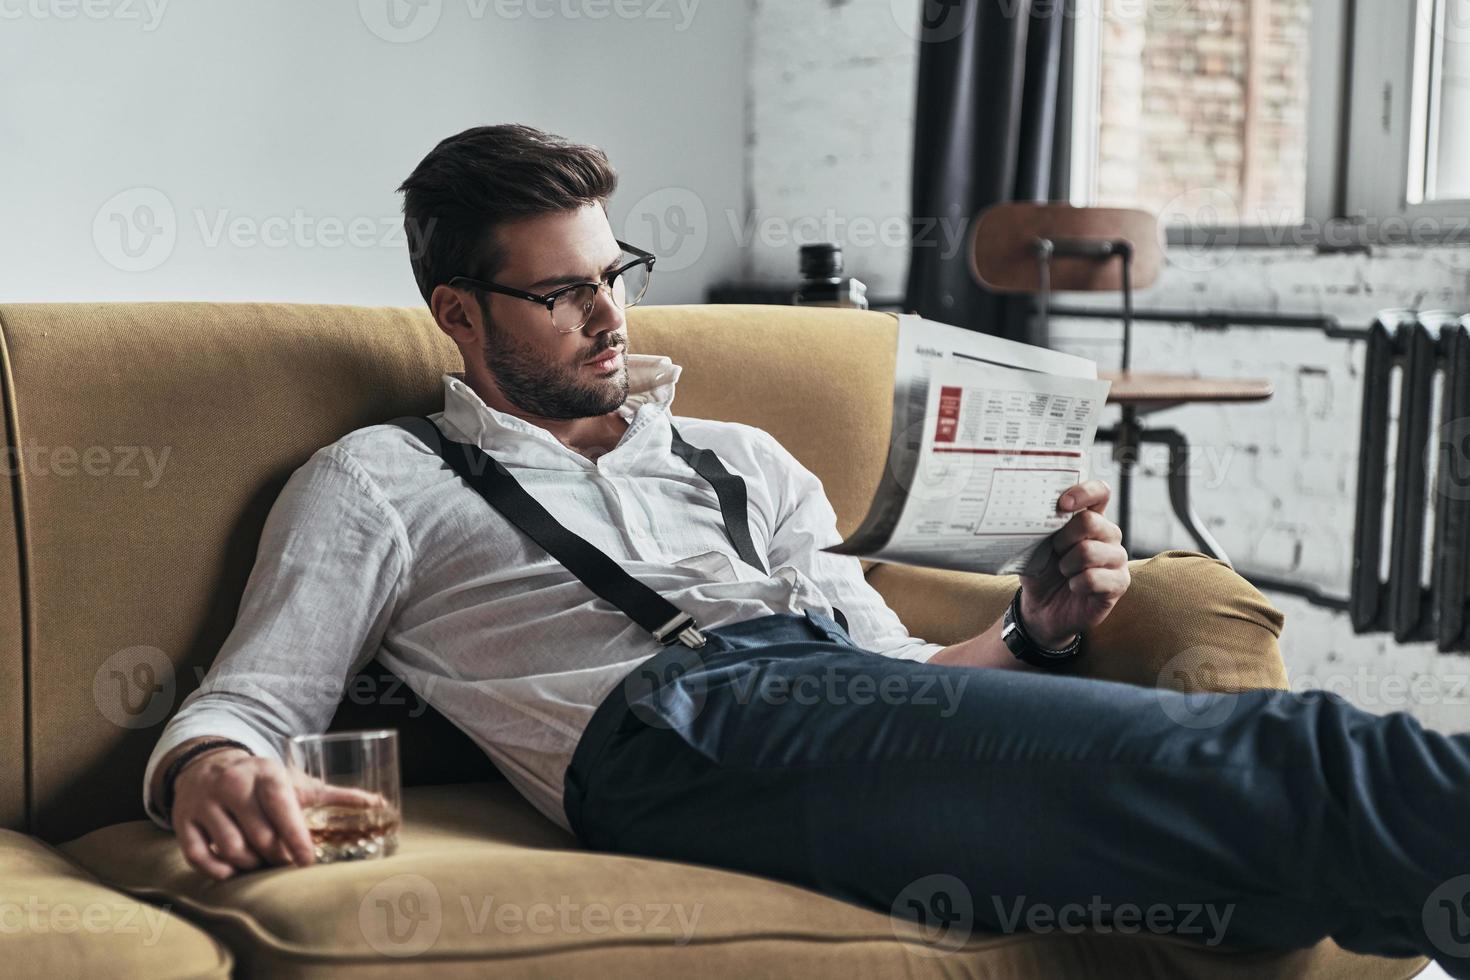 artigo interessante. jovem elegantemente vestido lendo um jornal e segurando um copo enquanto está sentado no sofá foto